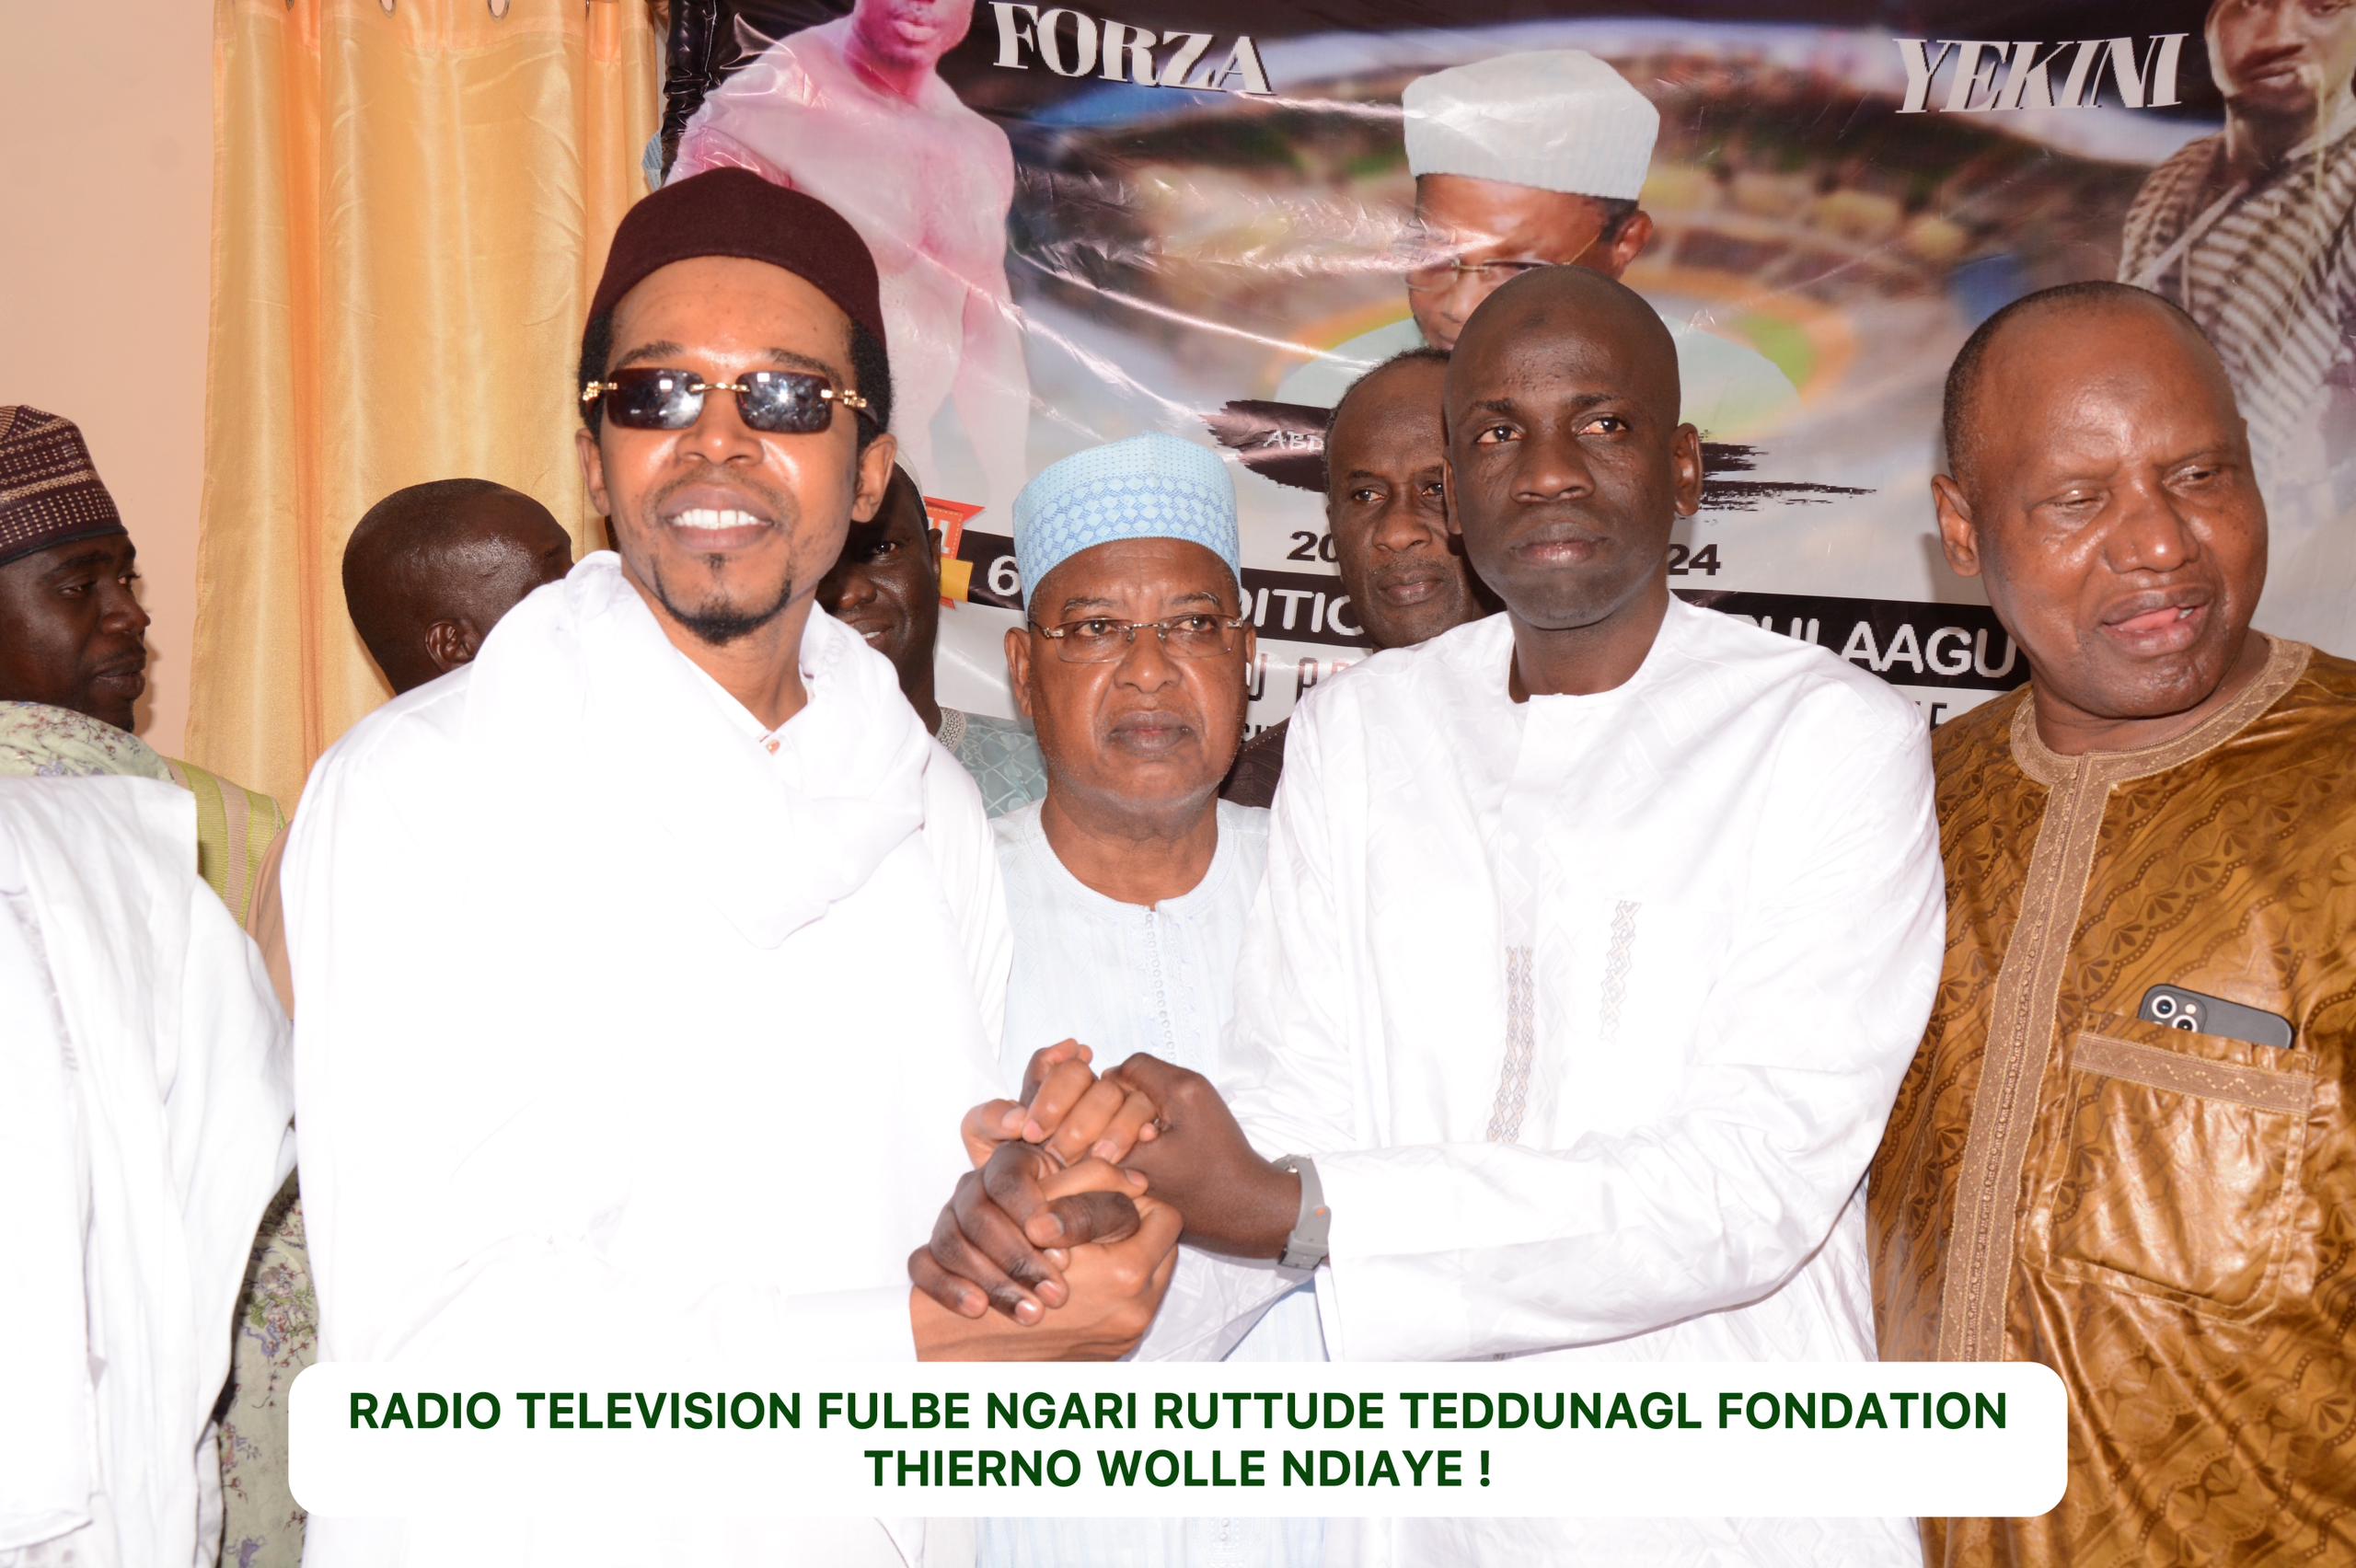 Radio Télévision ngari ruttude teddungal Fondation Thierno Wolle Ndiaye